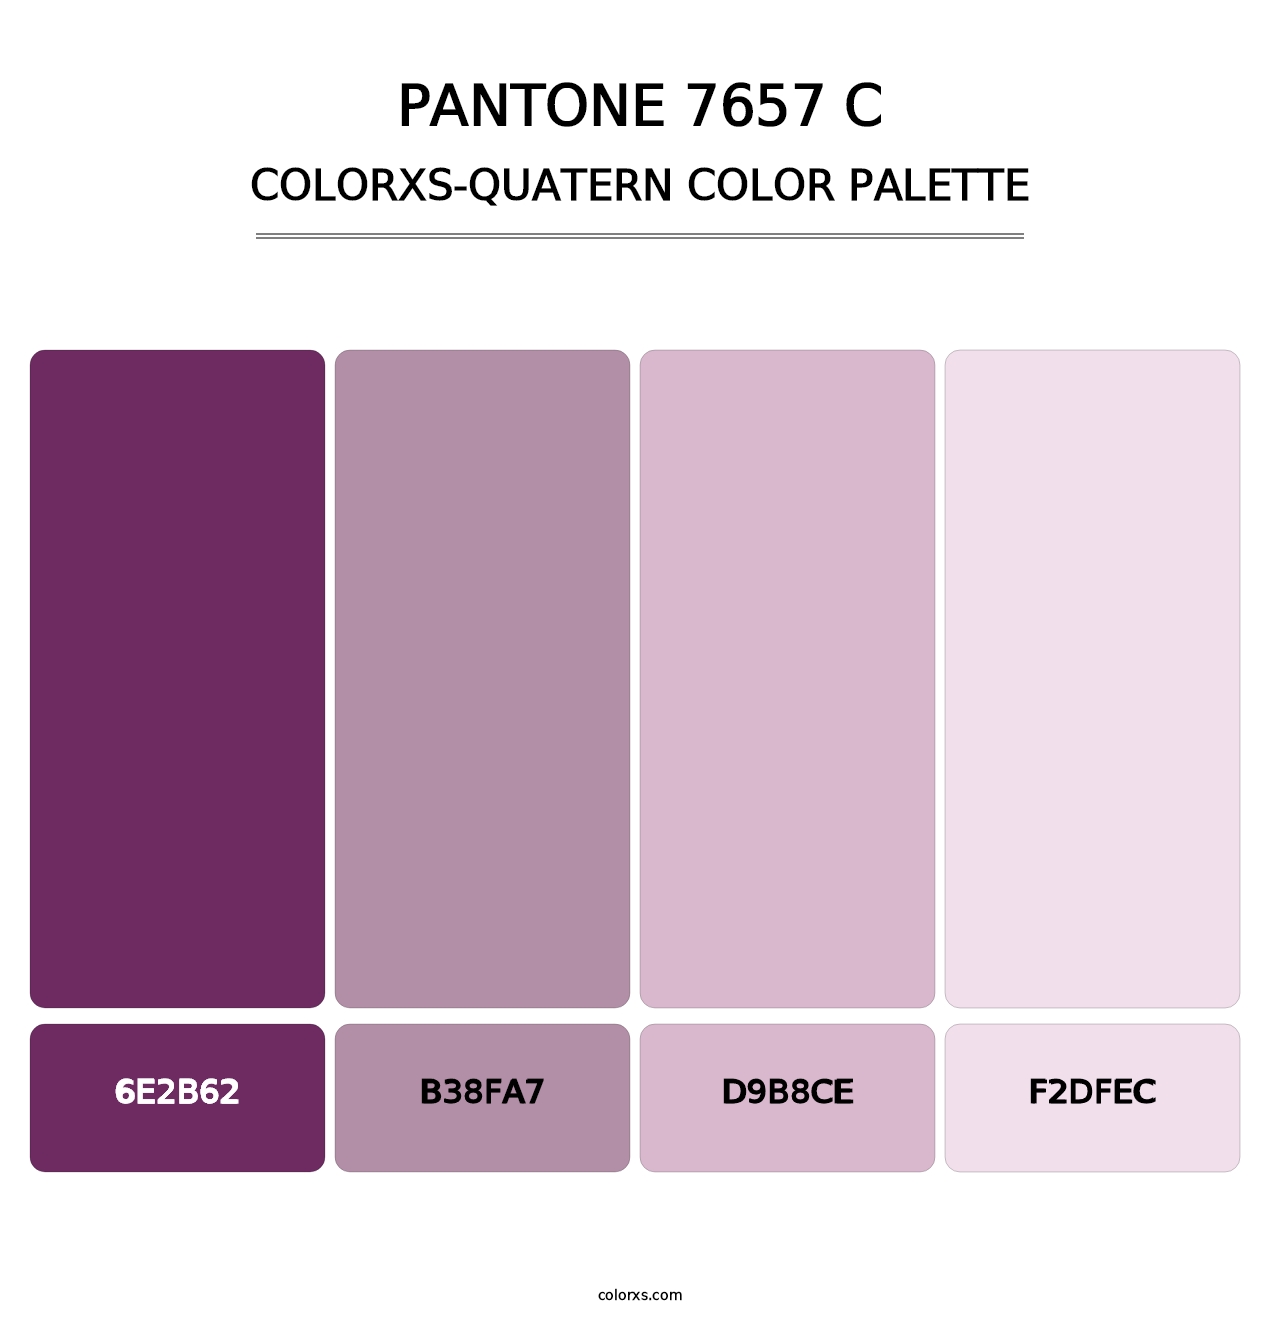 PANTONE 7657 C - Colorxs Quatern Palette